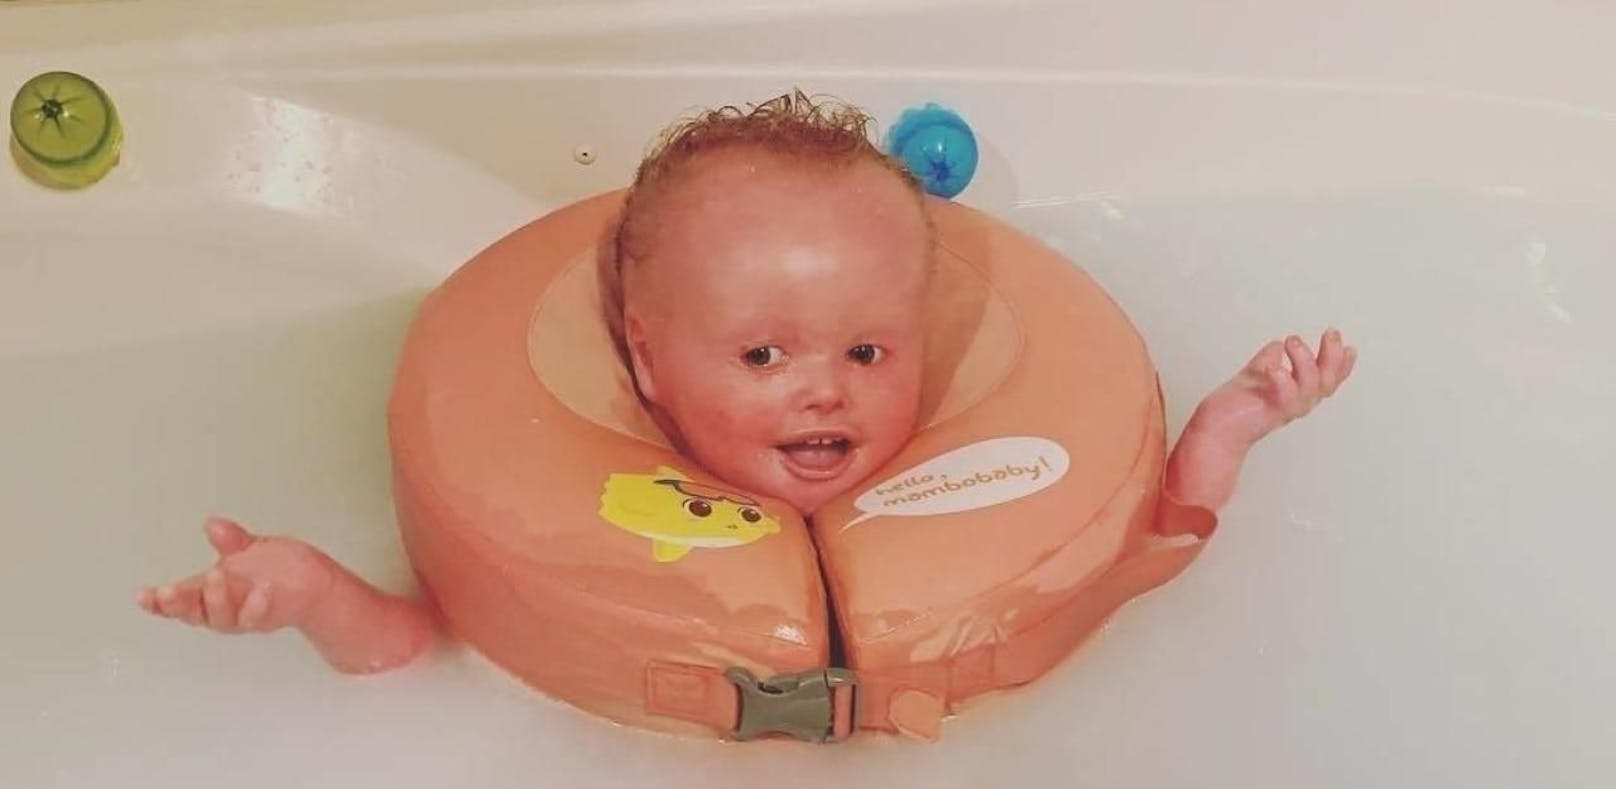 Baby muss alle 2 Stunden baden, um zu überleben